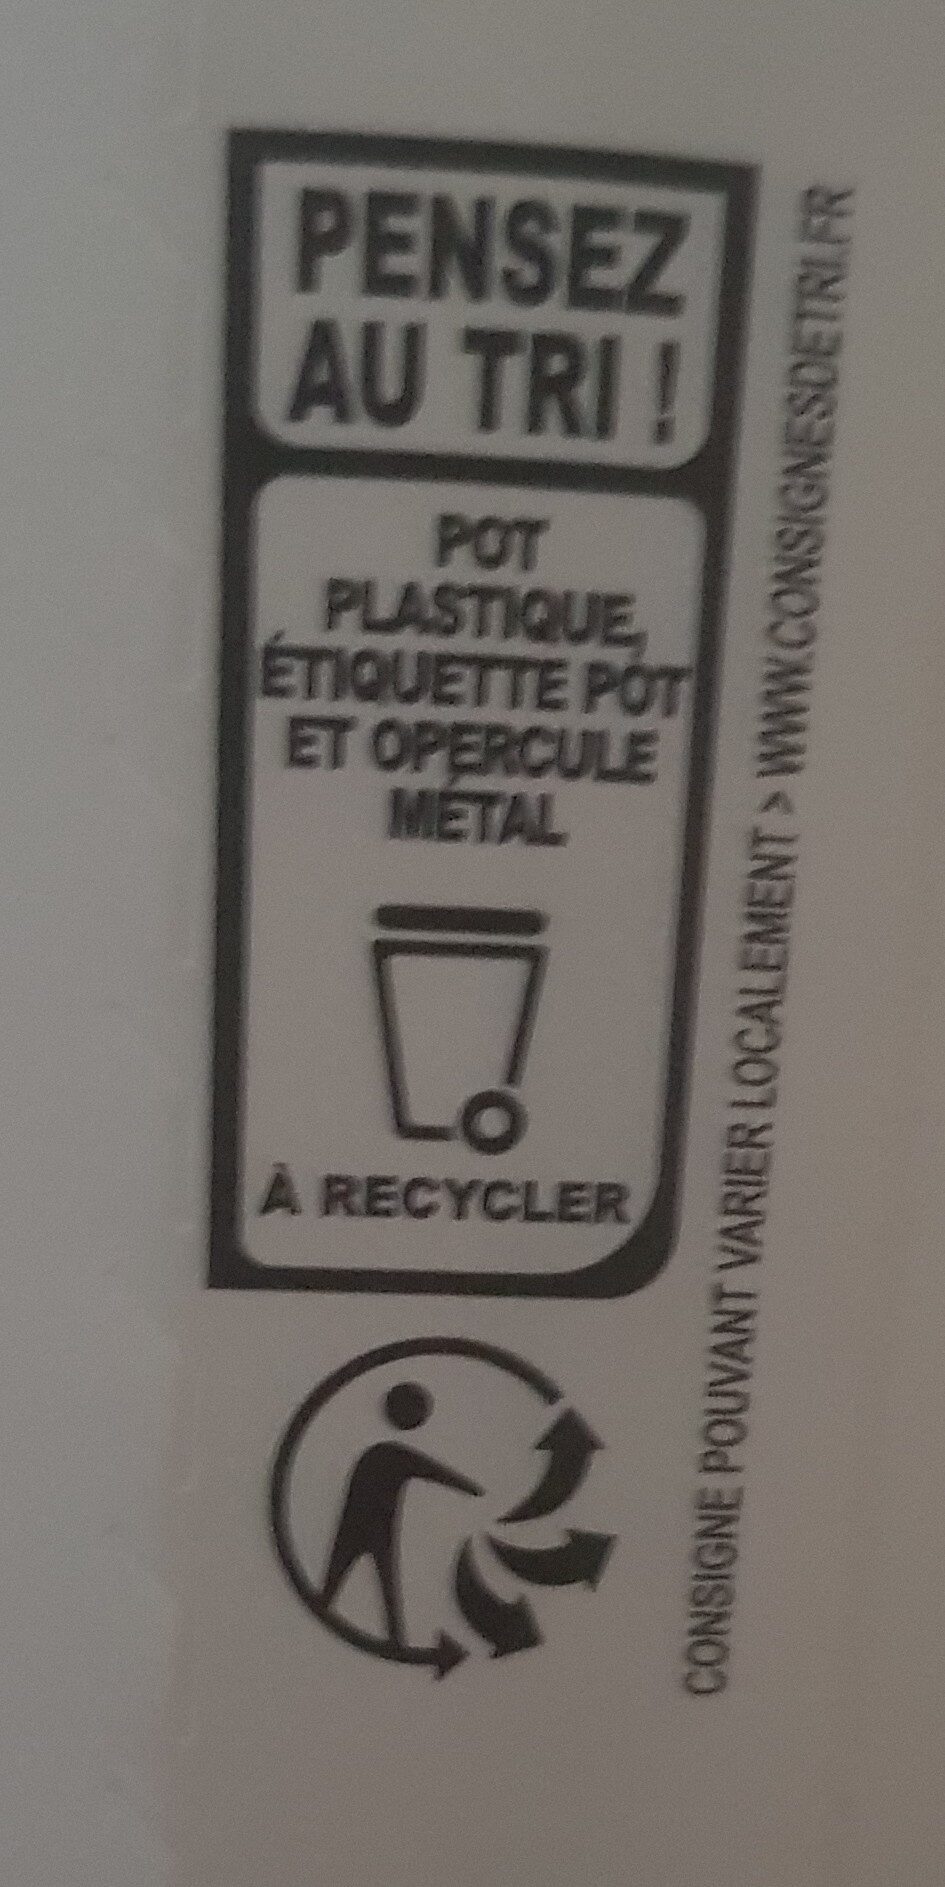 Skyr myrtille - Instruccions de reciclatge i/o informació d’embalatge - fr